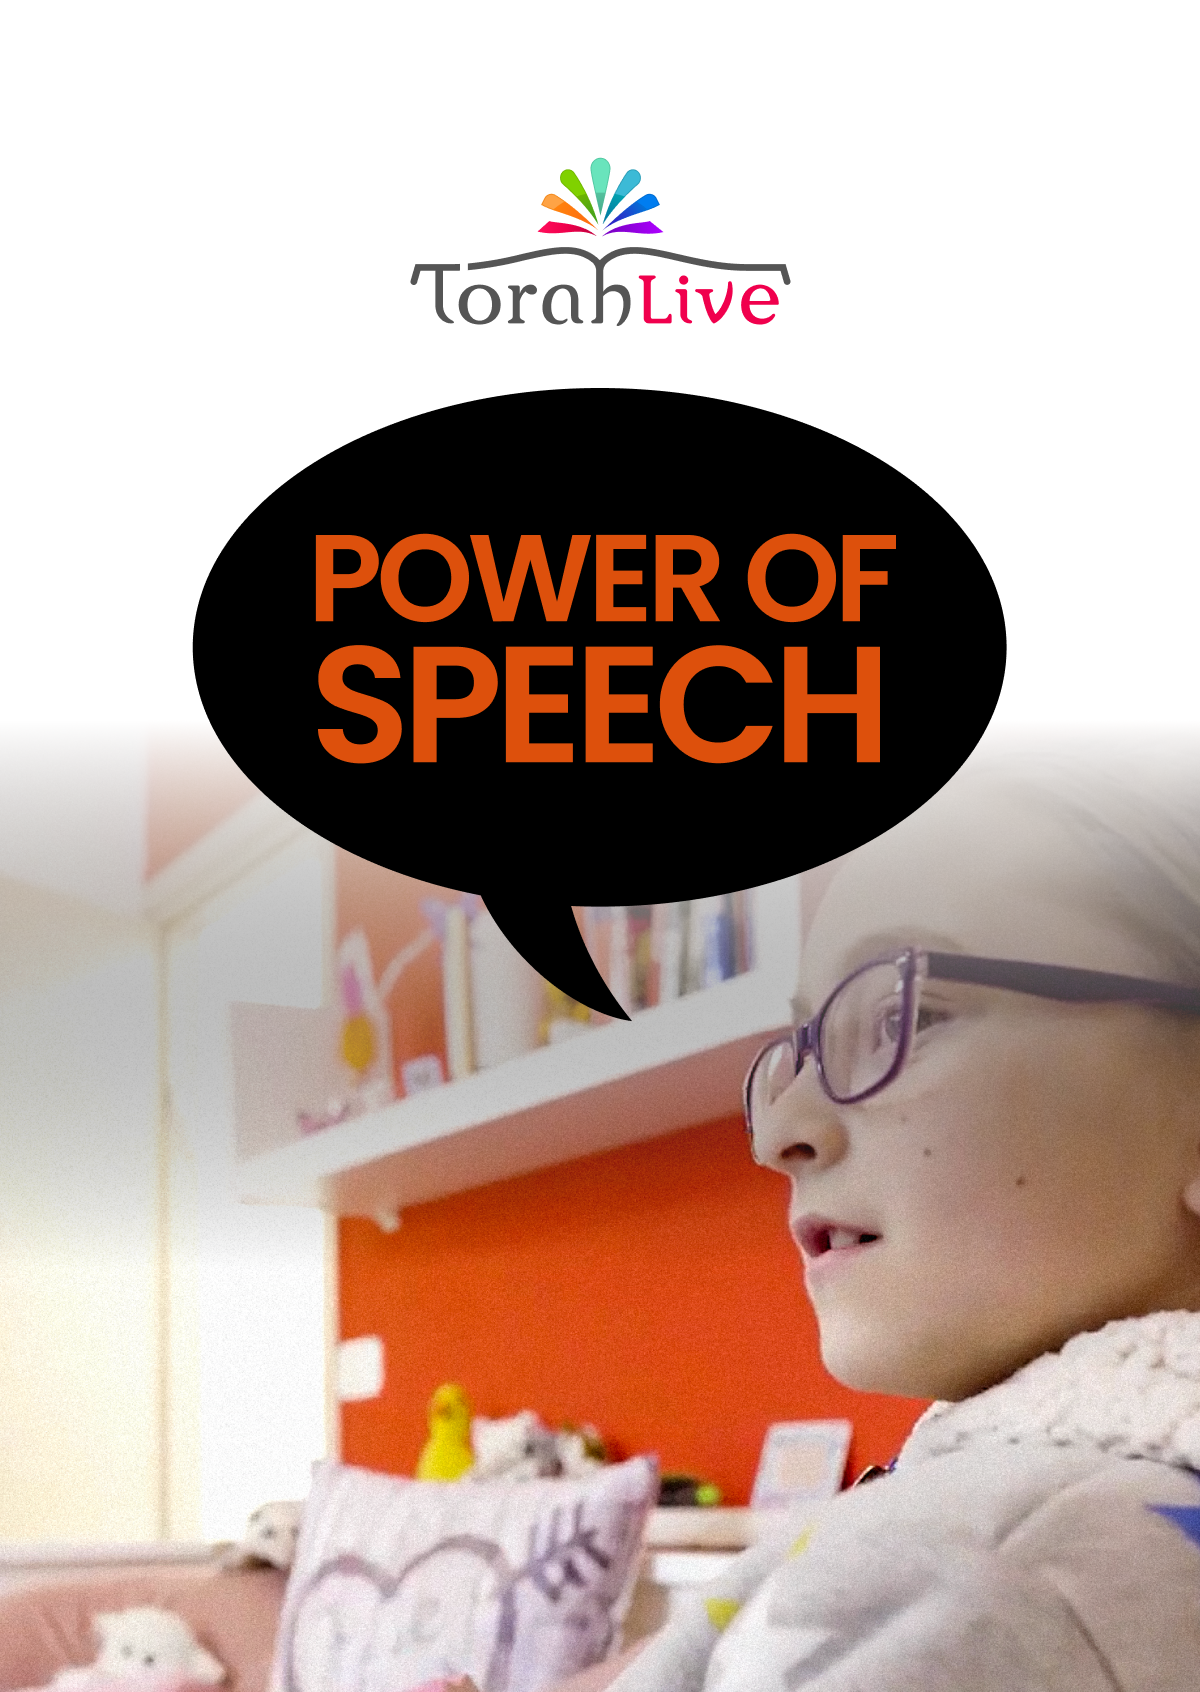 תורה בשידור חי - כוח הדיבור (וידאו)